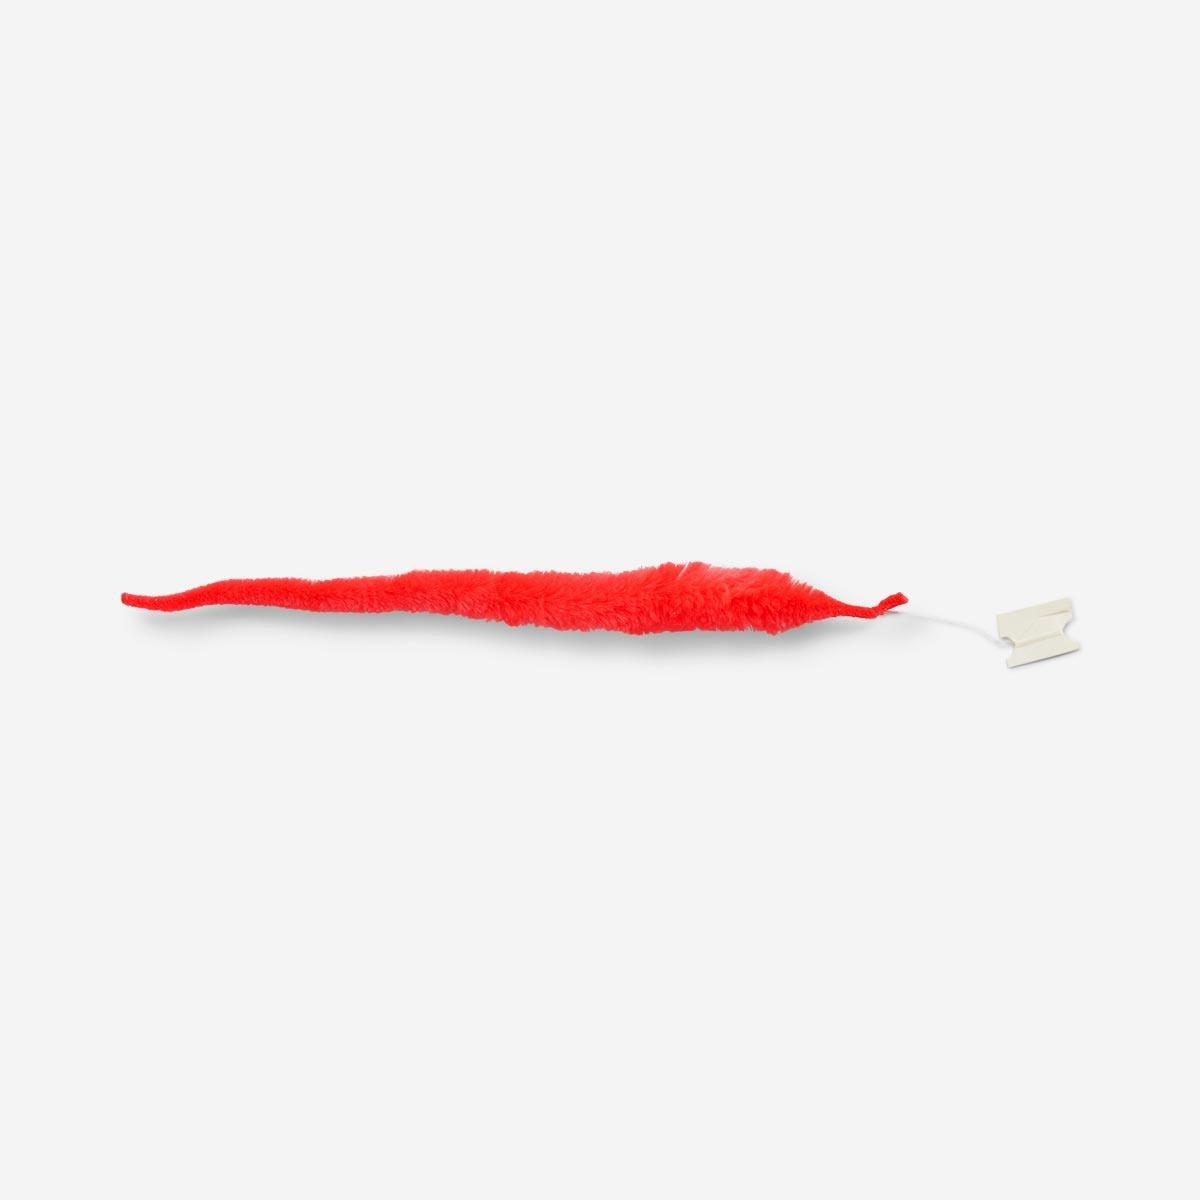 Red furry twisty worm